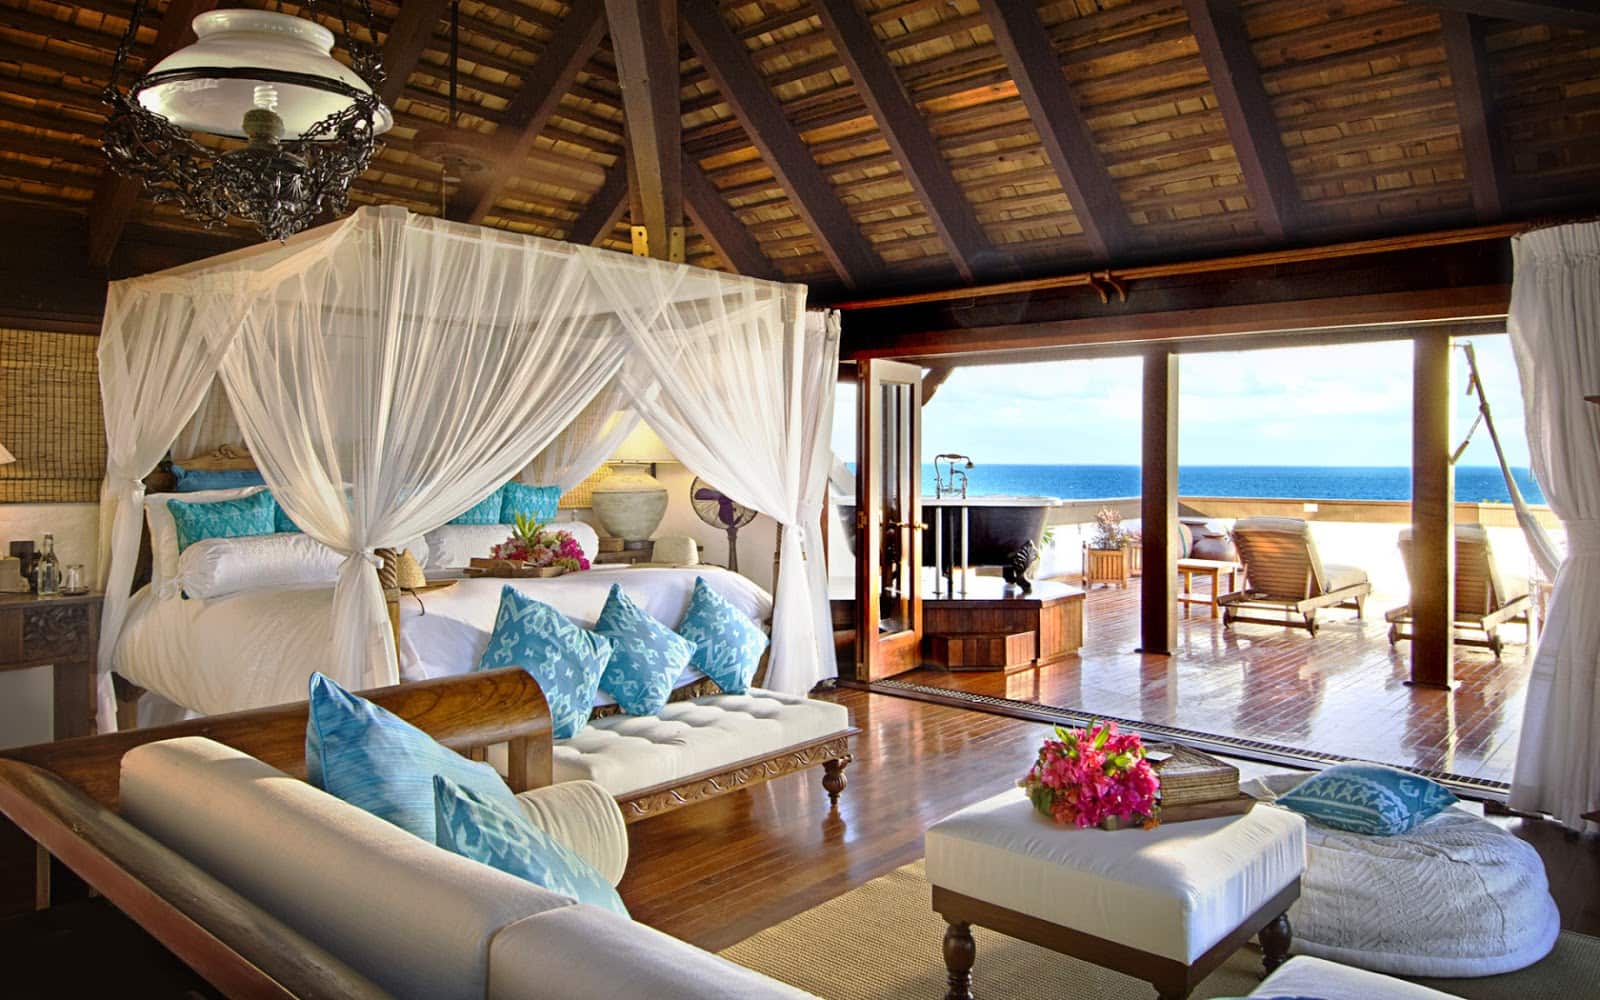 Ortasında beyaz gölgelik yatak bulunan okyanus kıyısındaki bungalovun harika açık alan tasarımı